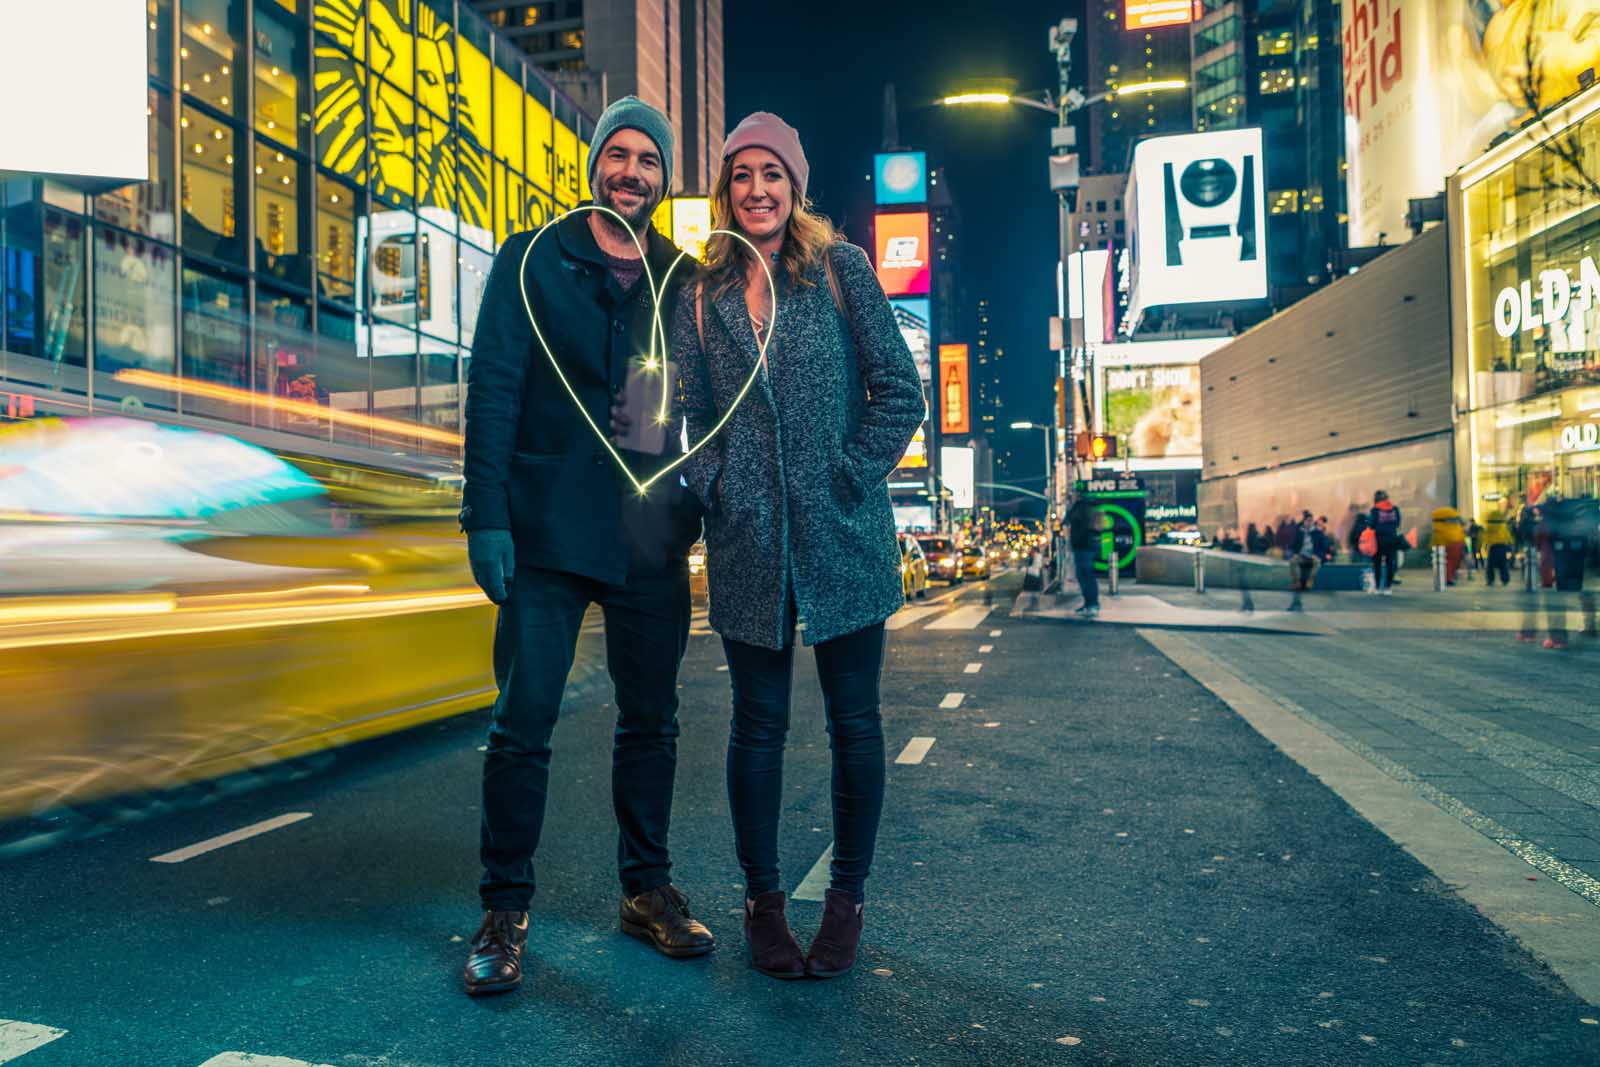 Megan and Scott at Times Square at night